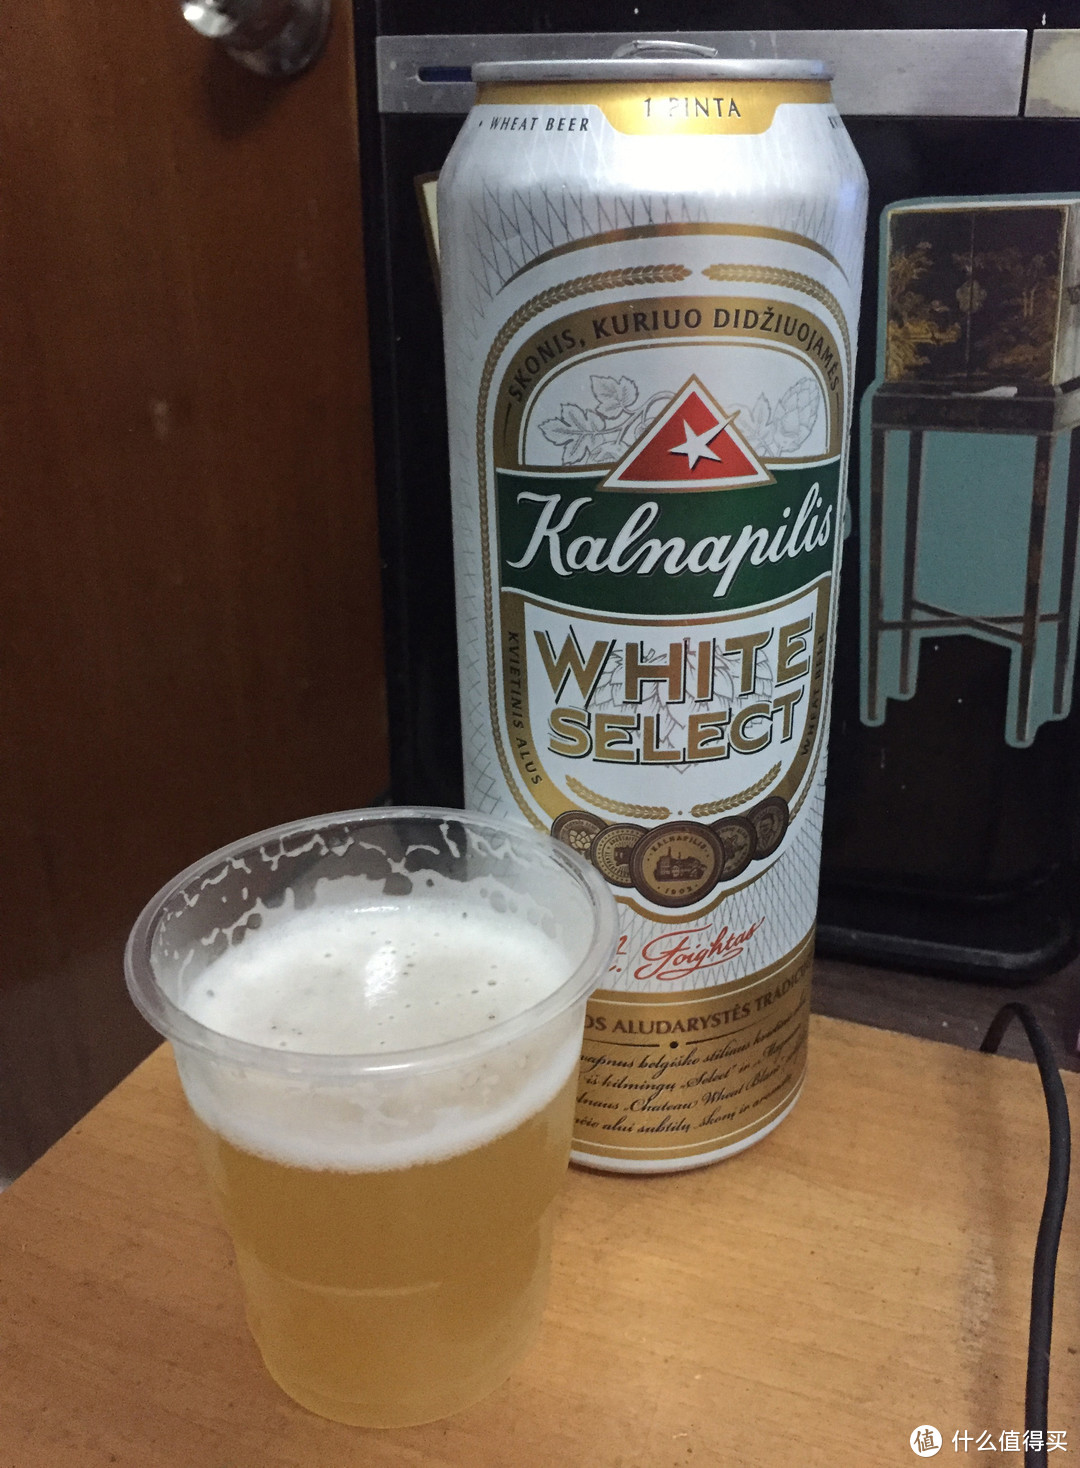 种草沃尔玛Kalnapilis卡纳皮里和德国博豪啤酒